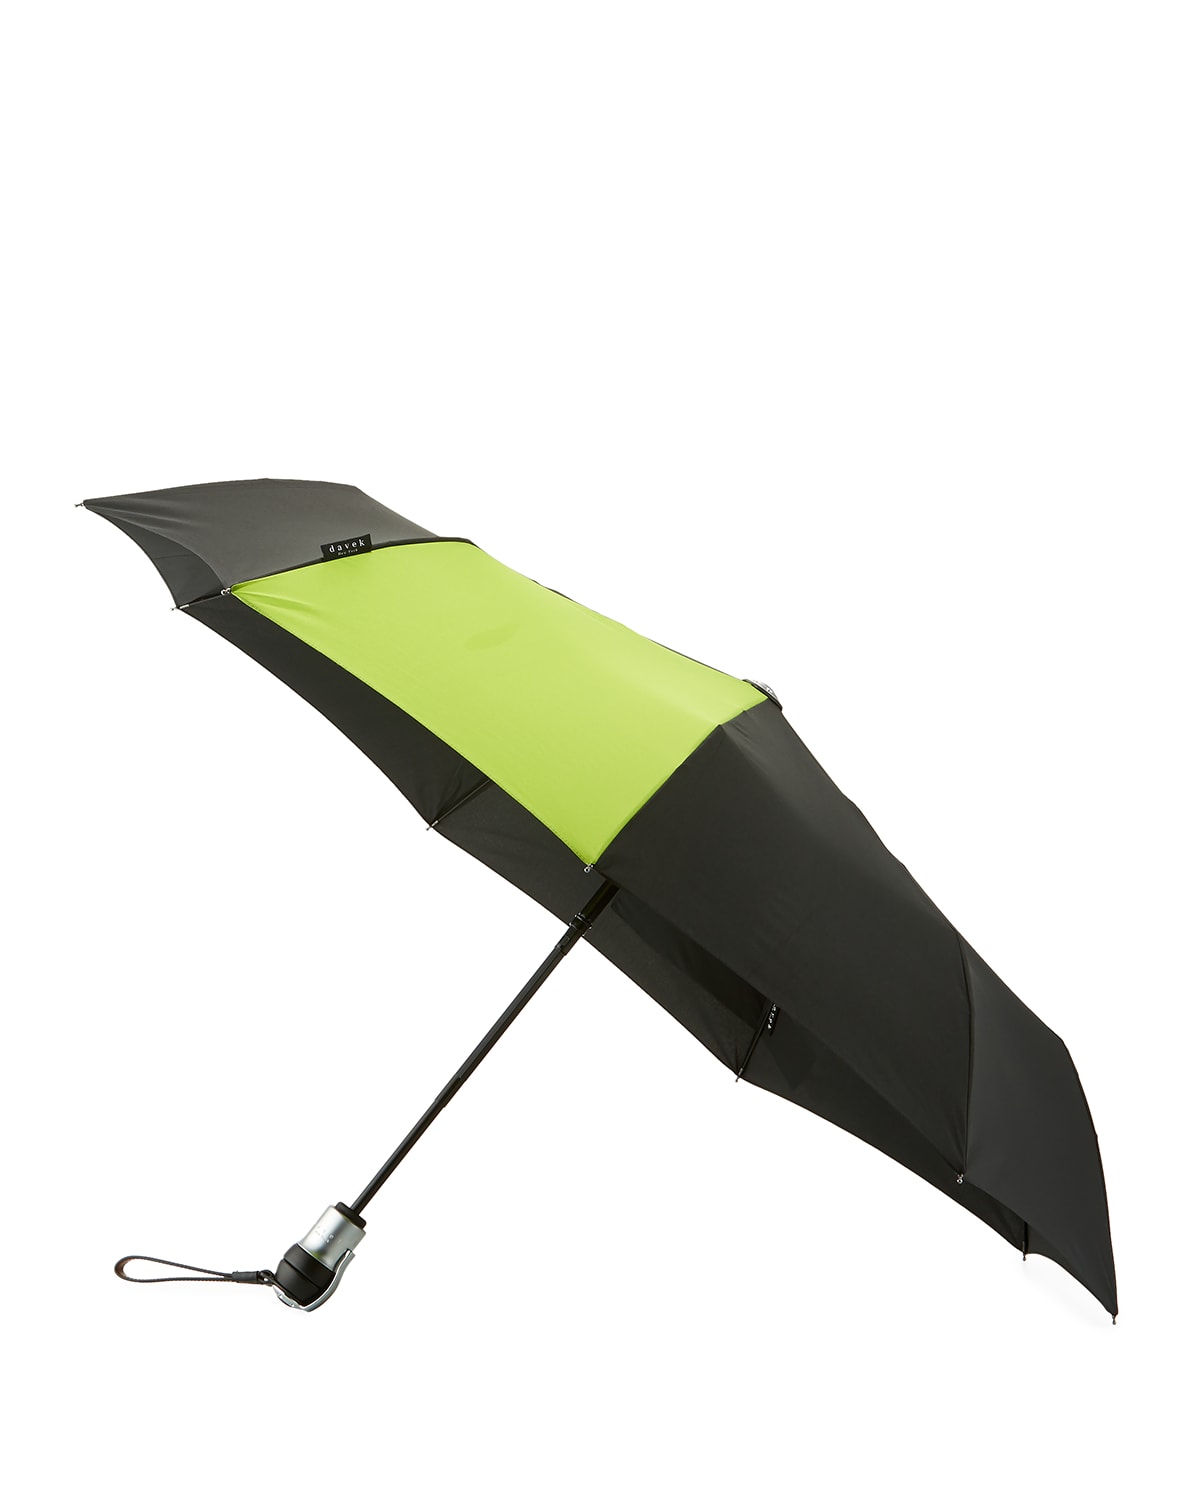 Solo Individual-Sized Umbrella